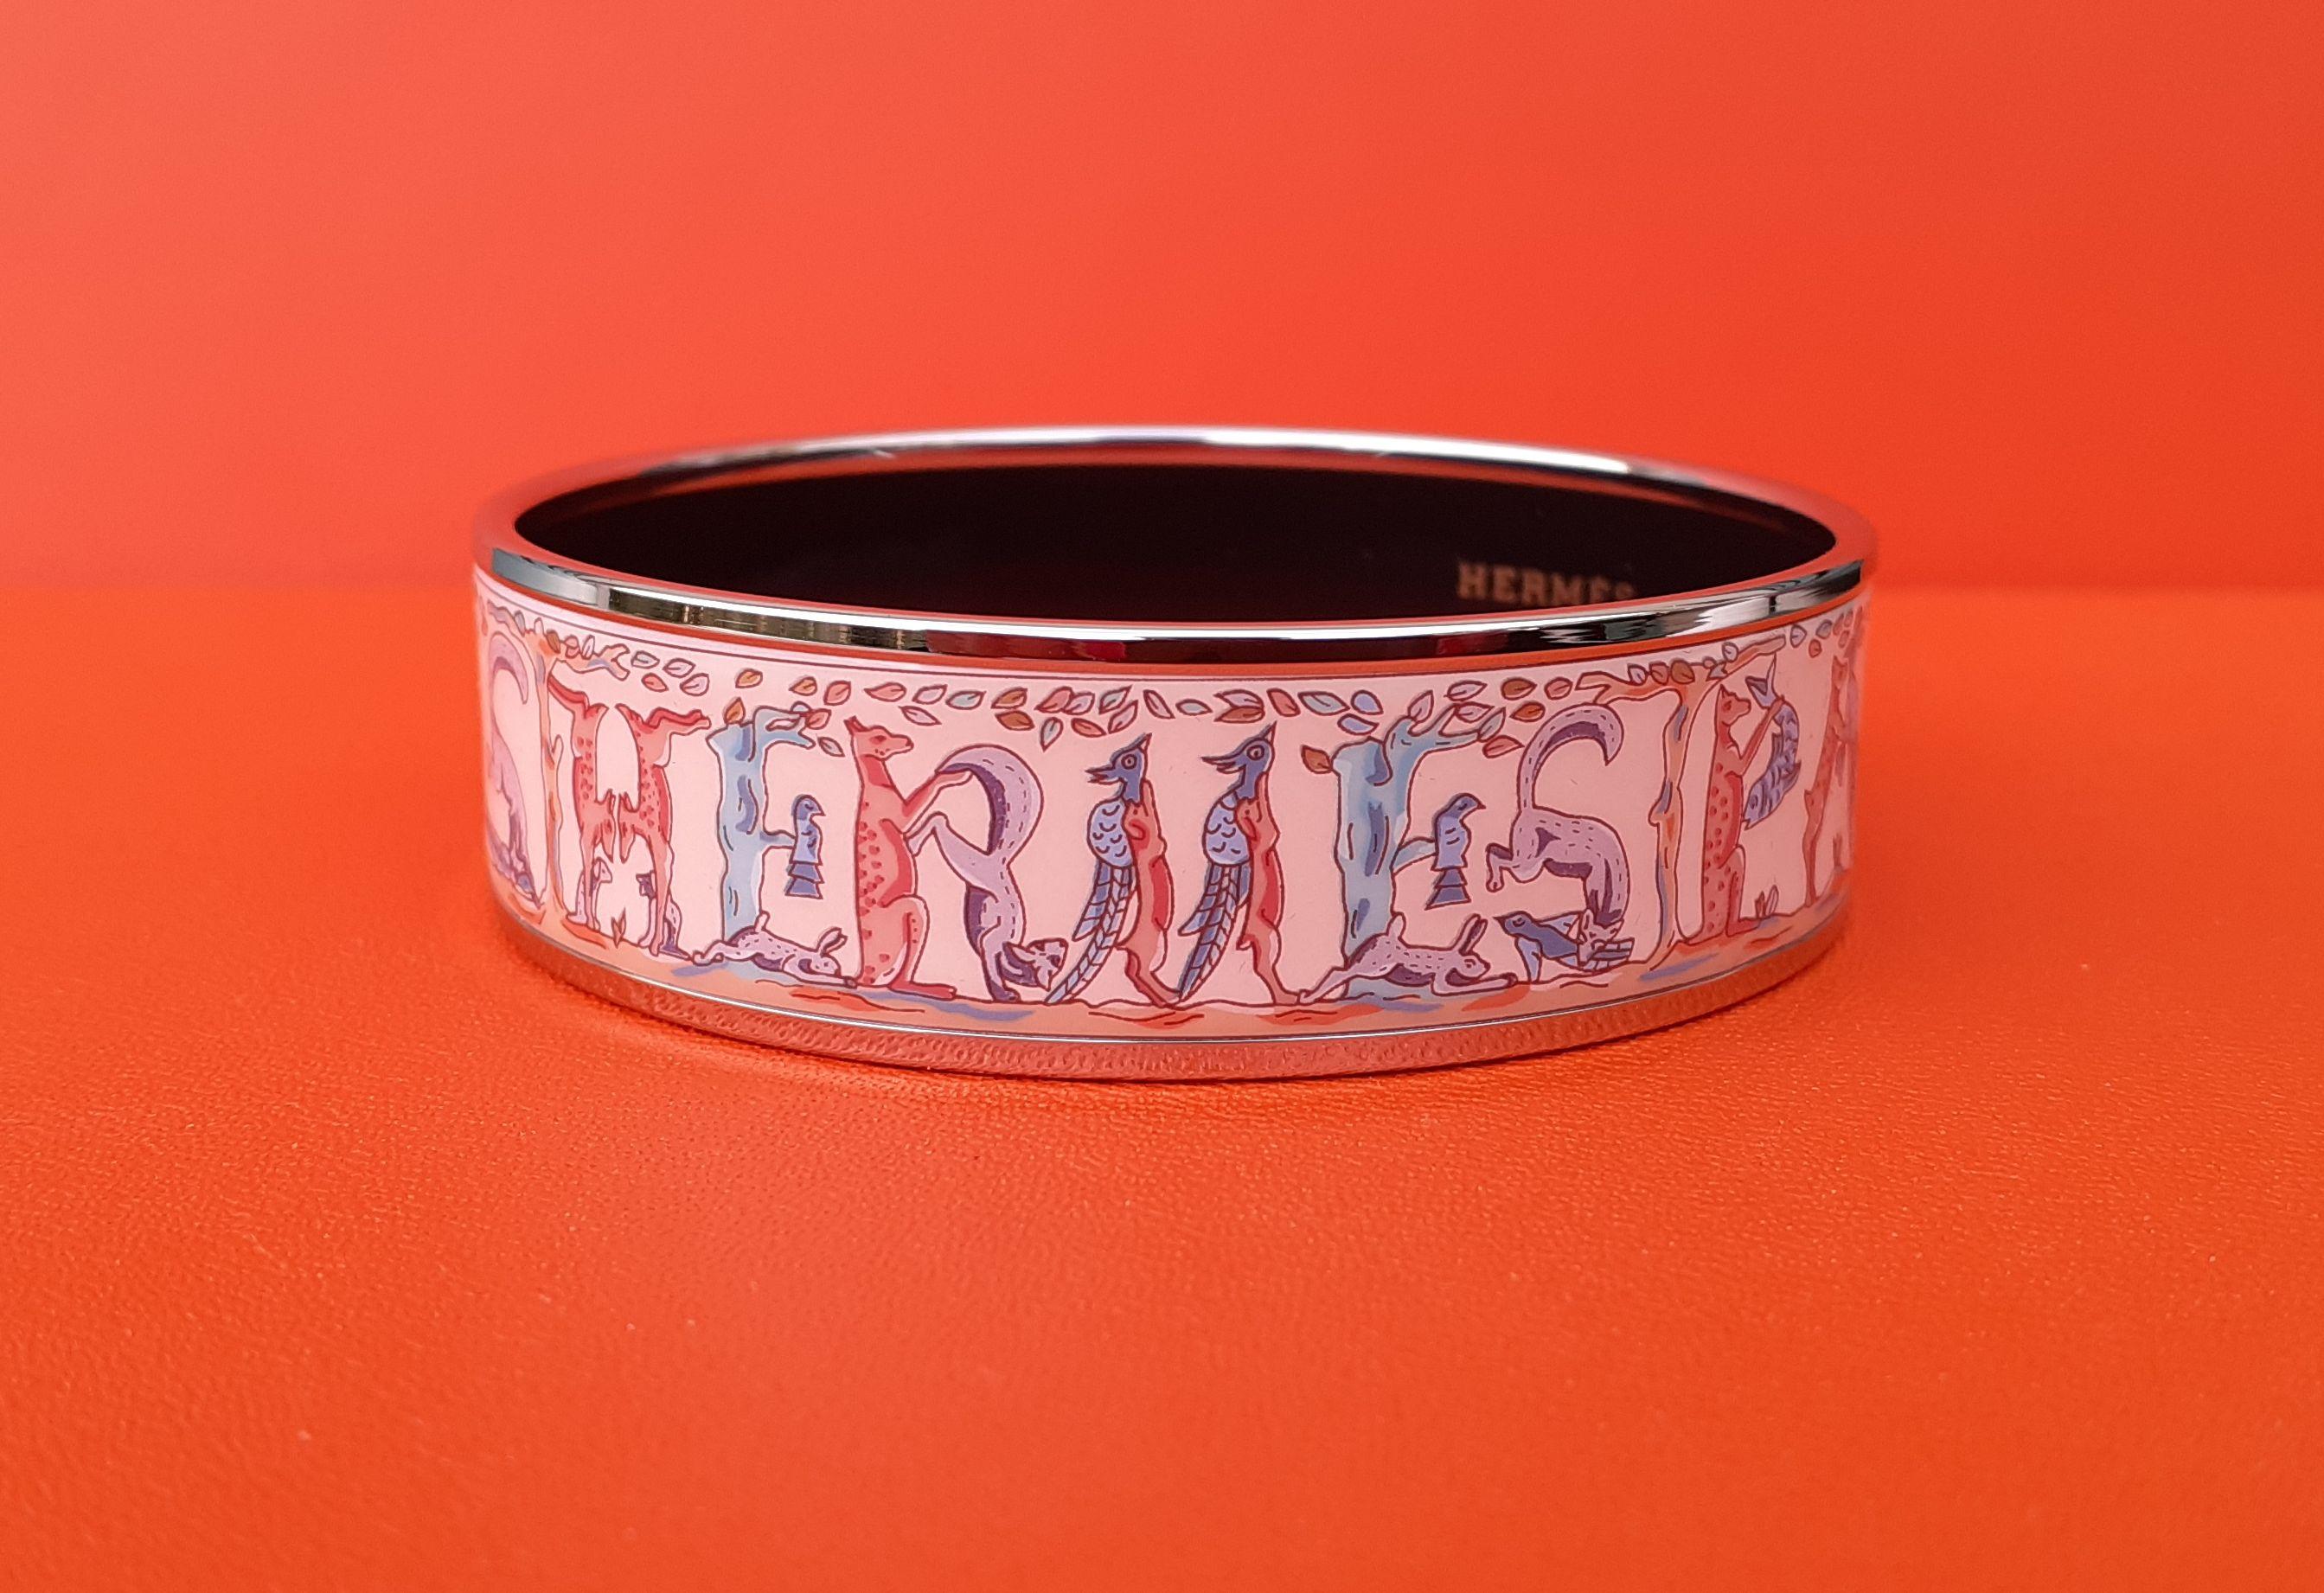 Magnifique bracelet Hermès authentique

Impression de l'écharpe 